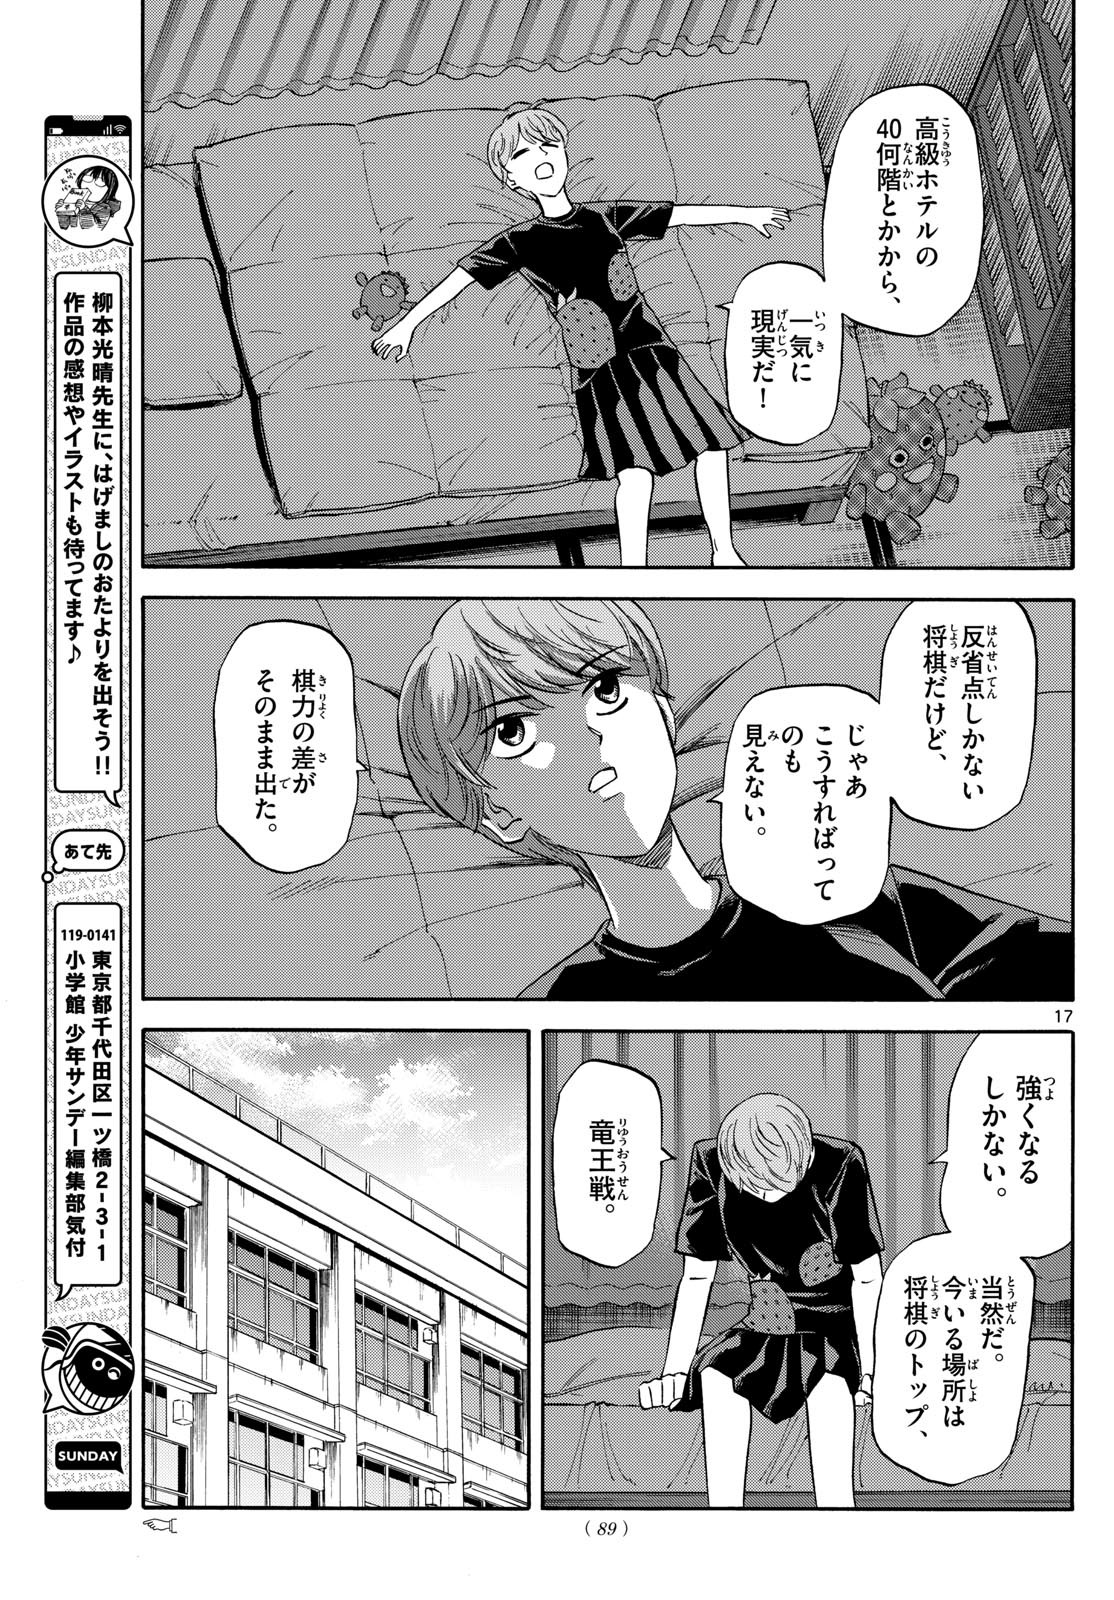 Ryu-to-Ichigo - Chapter 155 - Page 17